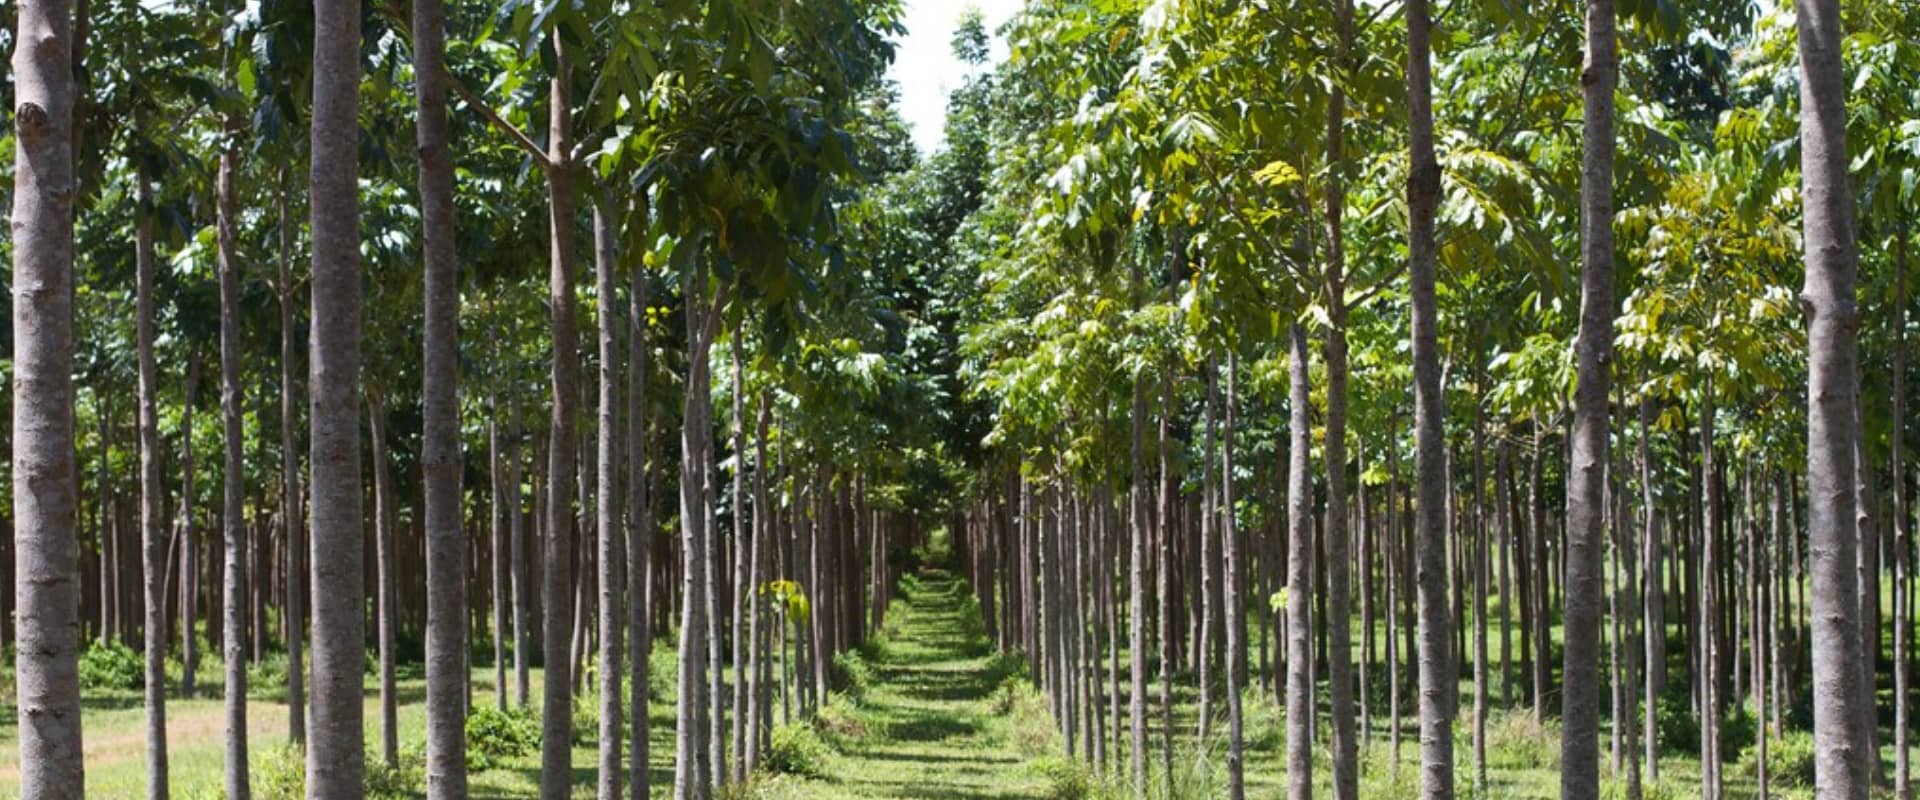 mahogany agroforestry